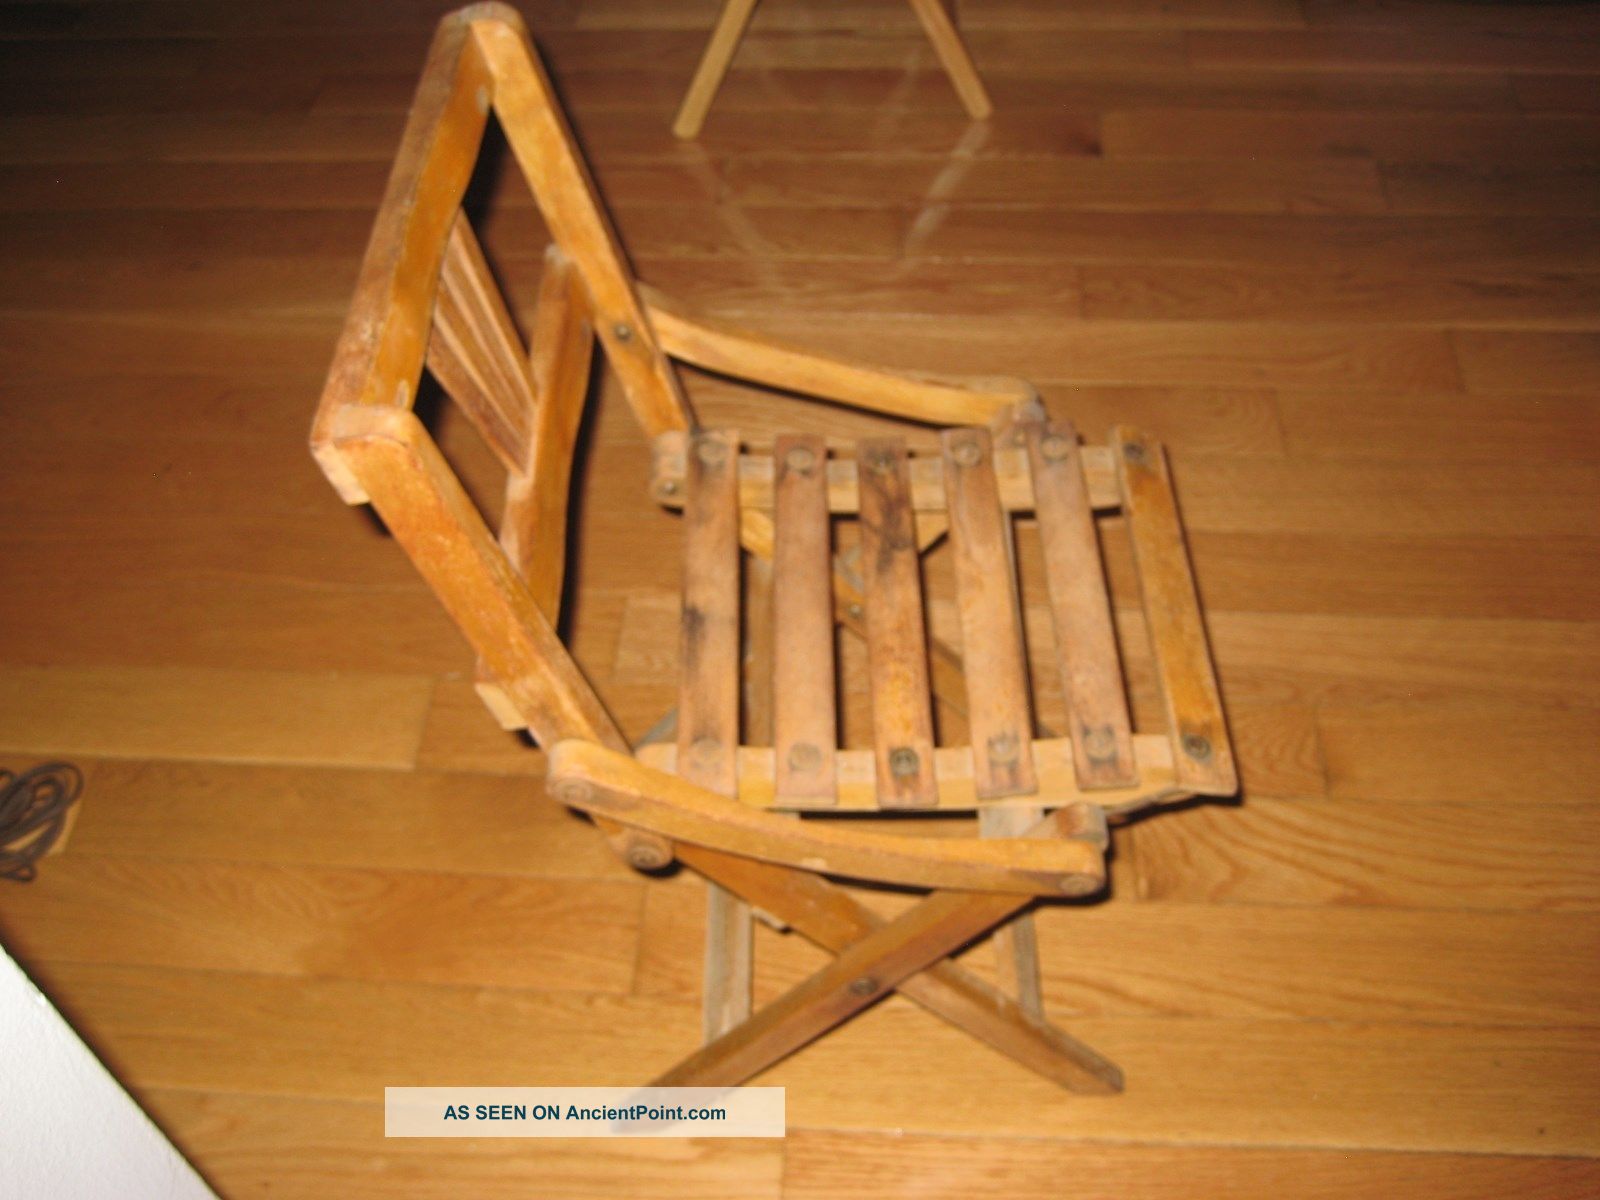 Antique Vintage Child ' S Wood Slat Folding Chair,  21 1/2 